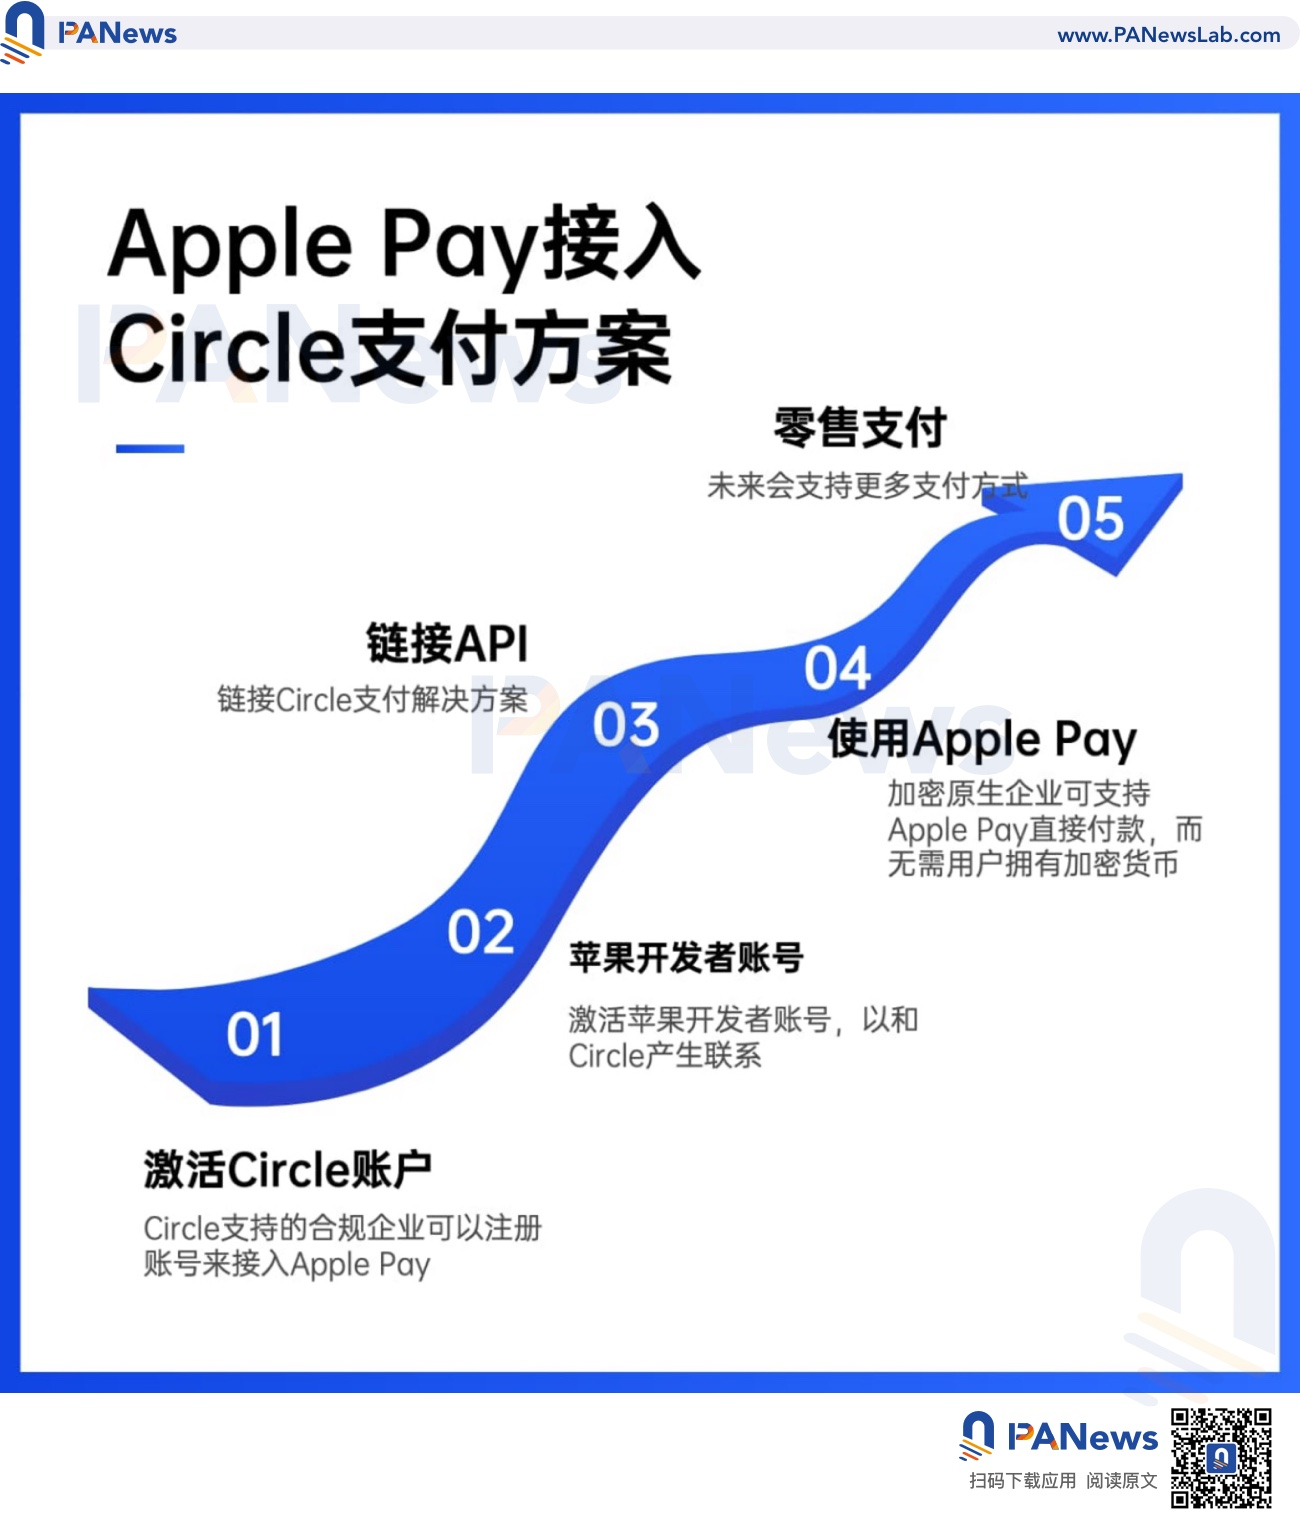 Apple Pay支持Circle付款解决方案：苹果的一小步，Web 3的一大步